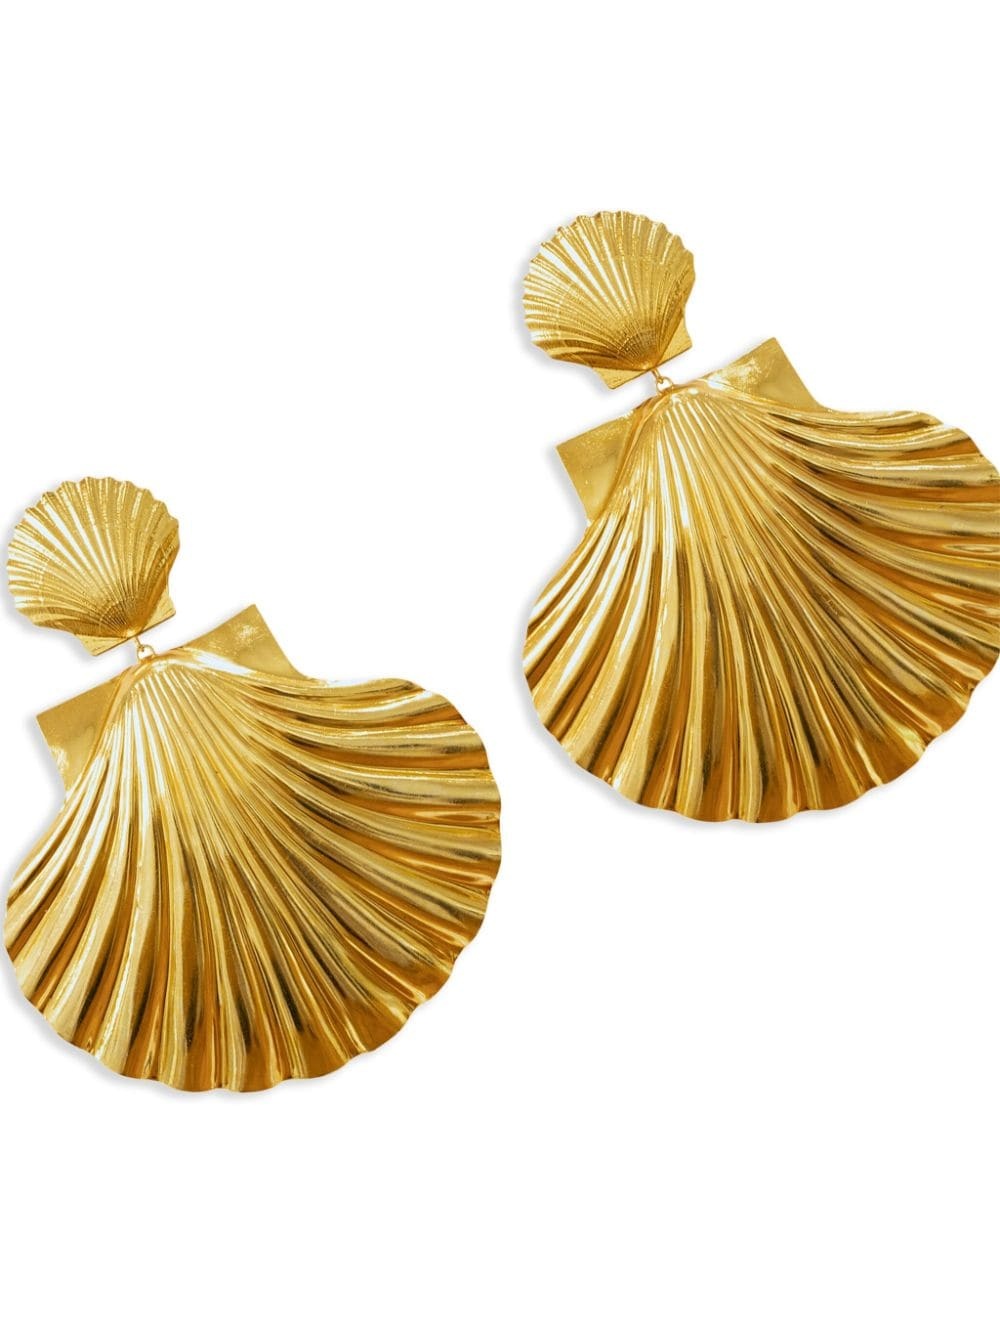 Attina shell earrings - 2